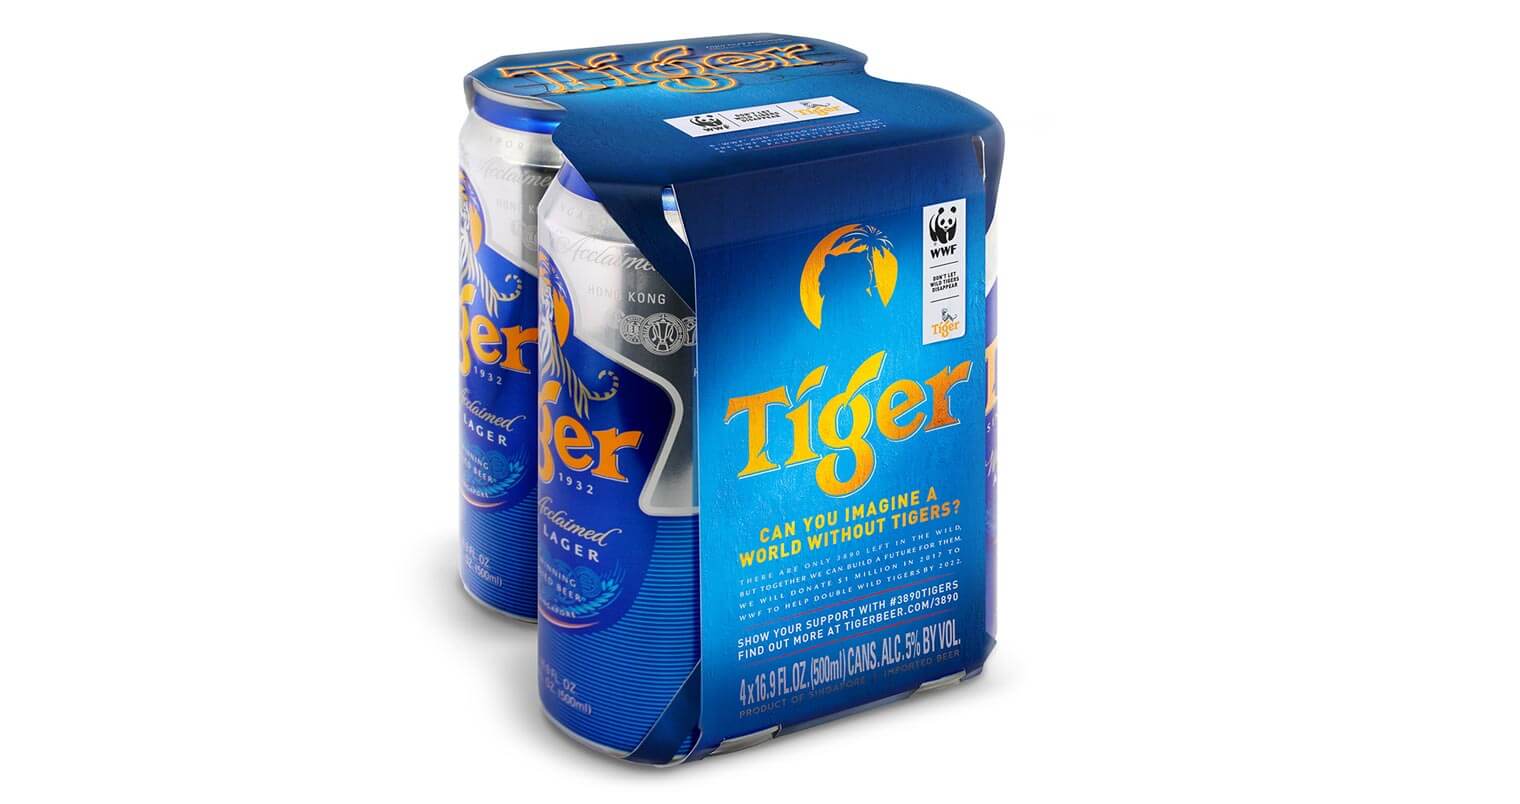 Tiger Beer Summer Program Supports Global Tiger Conservation Efforts, featured image